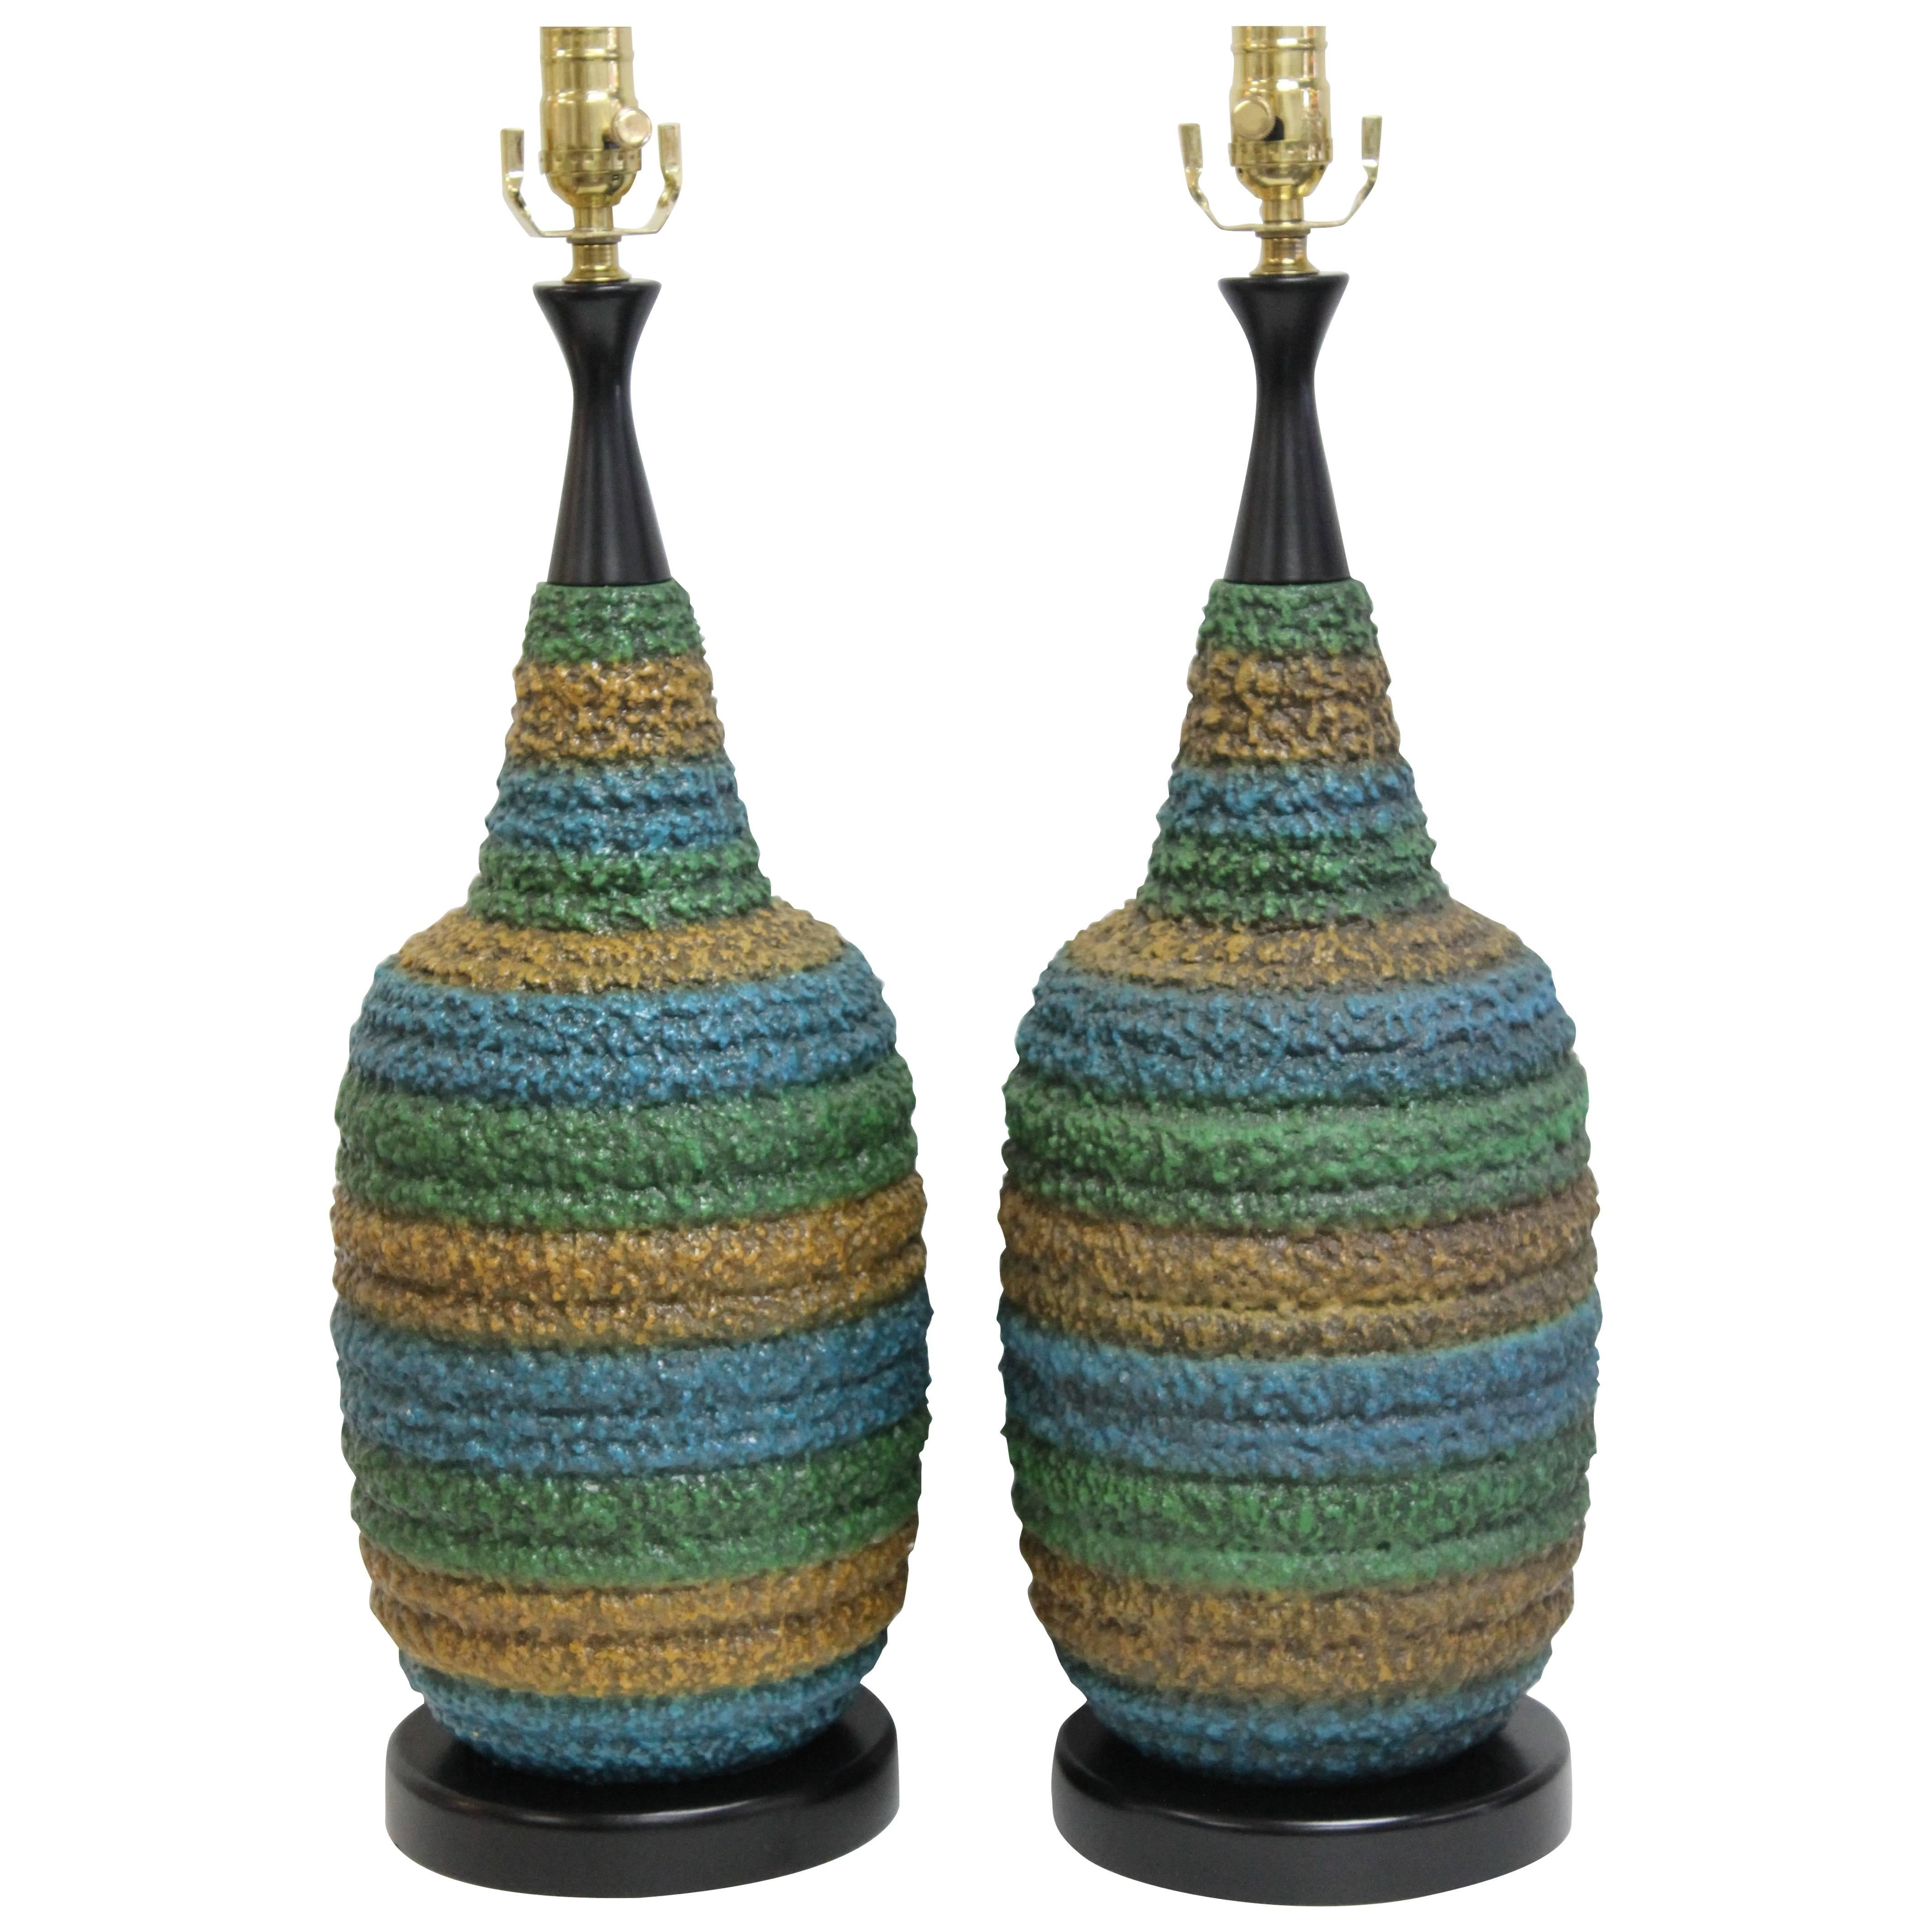 Pair of Multicolored Ceramic Lamps